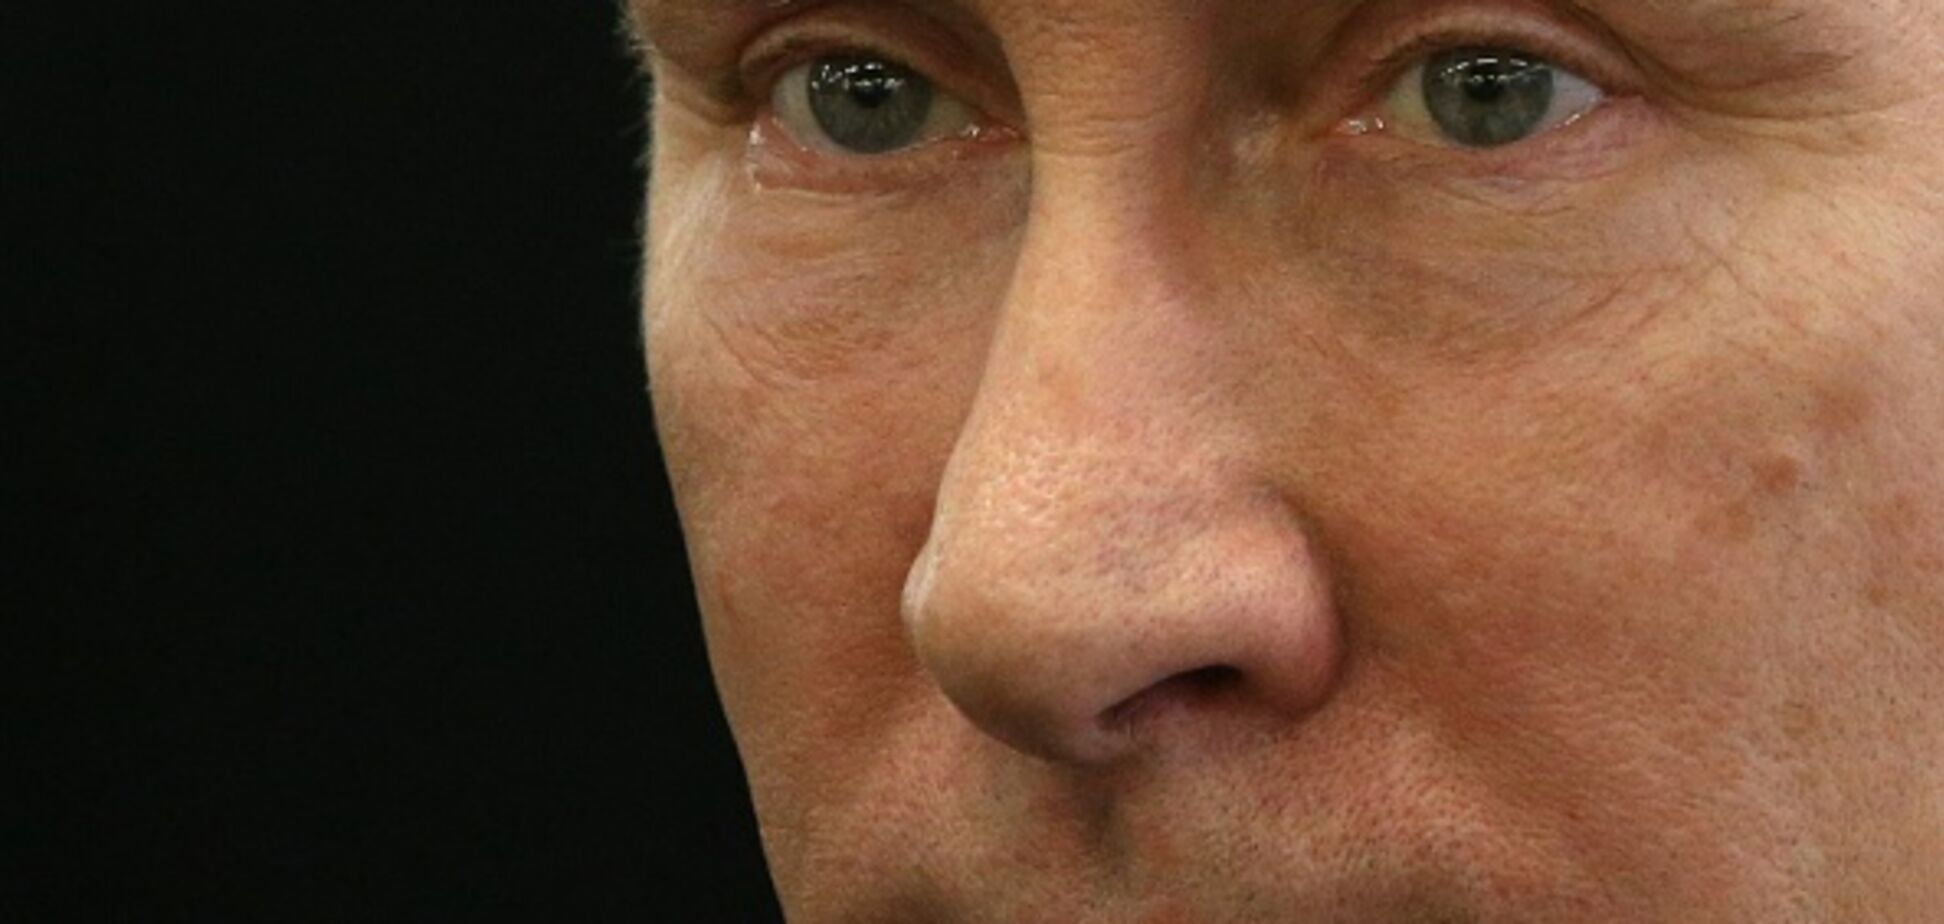 Посмел быть выше фюрера: новое фото с Путиным до слез рассмешило сеть